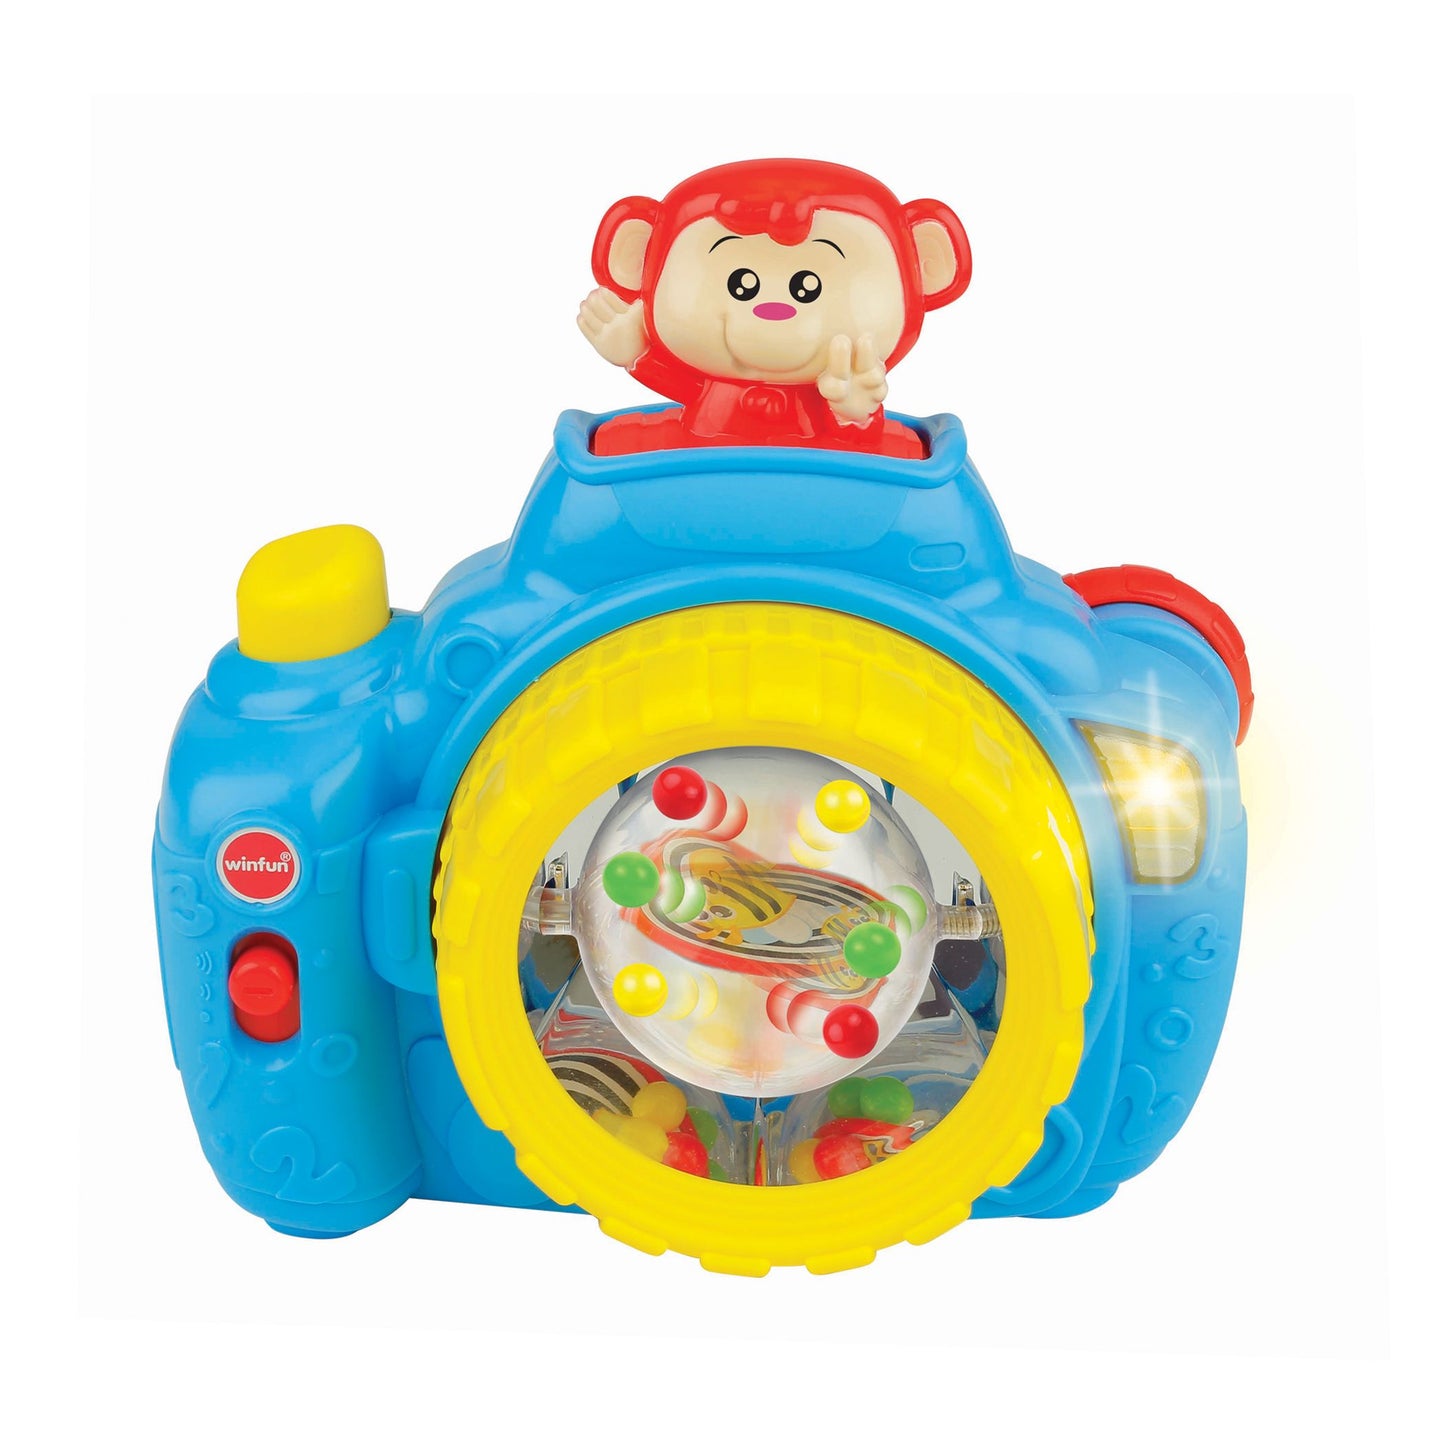 Winfun - Pop-Up Monkey Camera